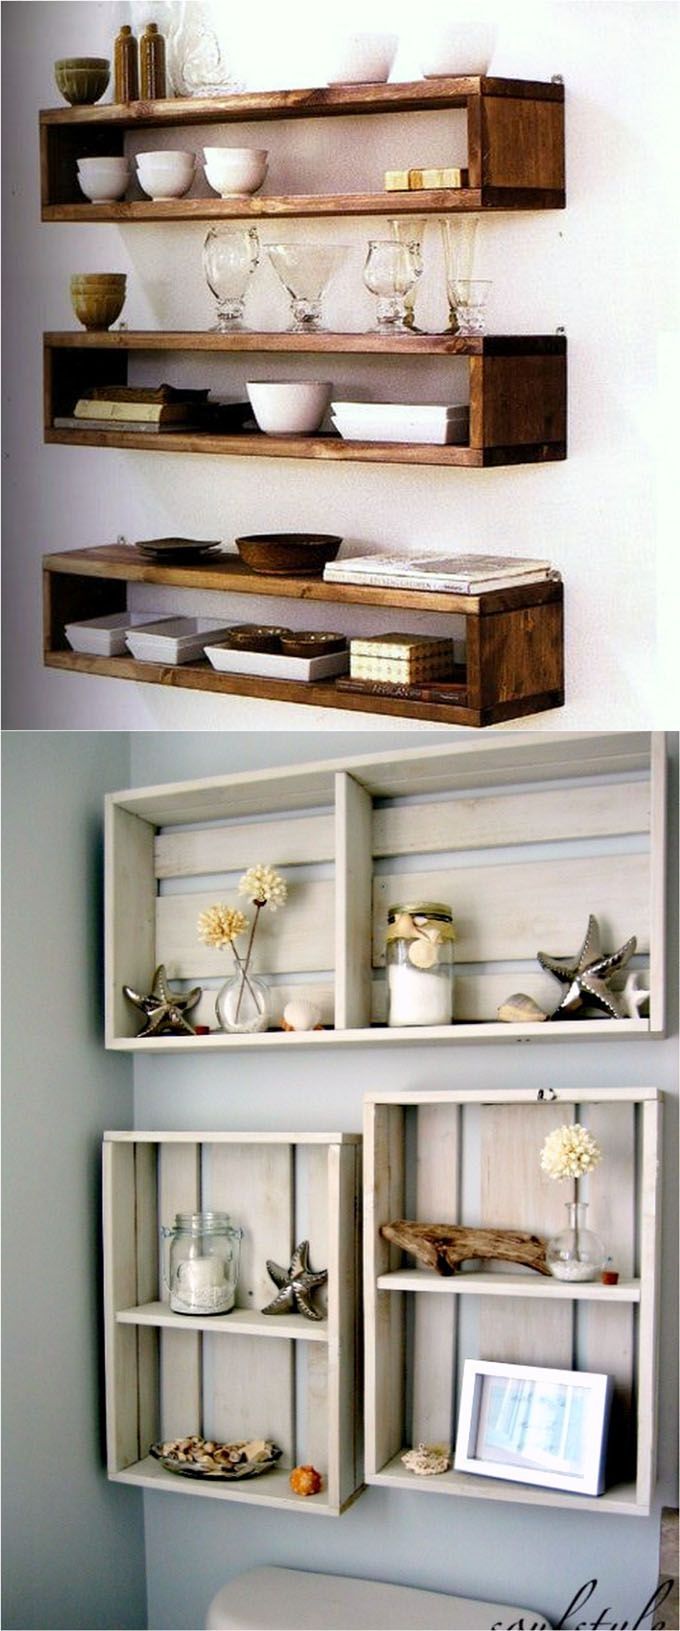 Best 20 Pallet Shelves Ideas On Pinterest Inside Wood For Shelves (View 11 of 15)